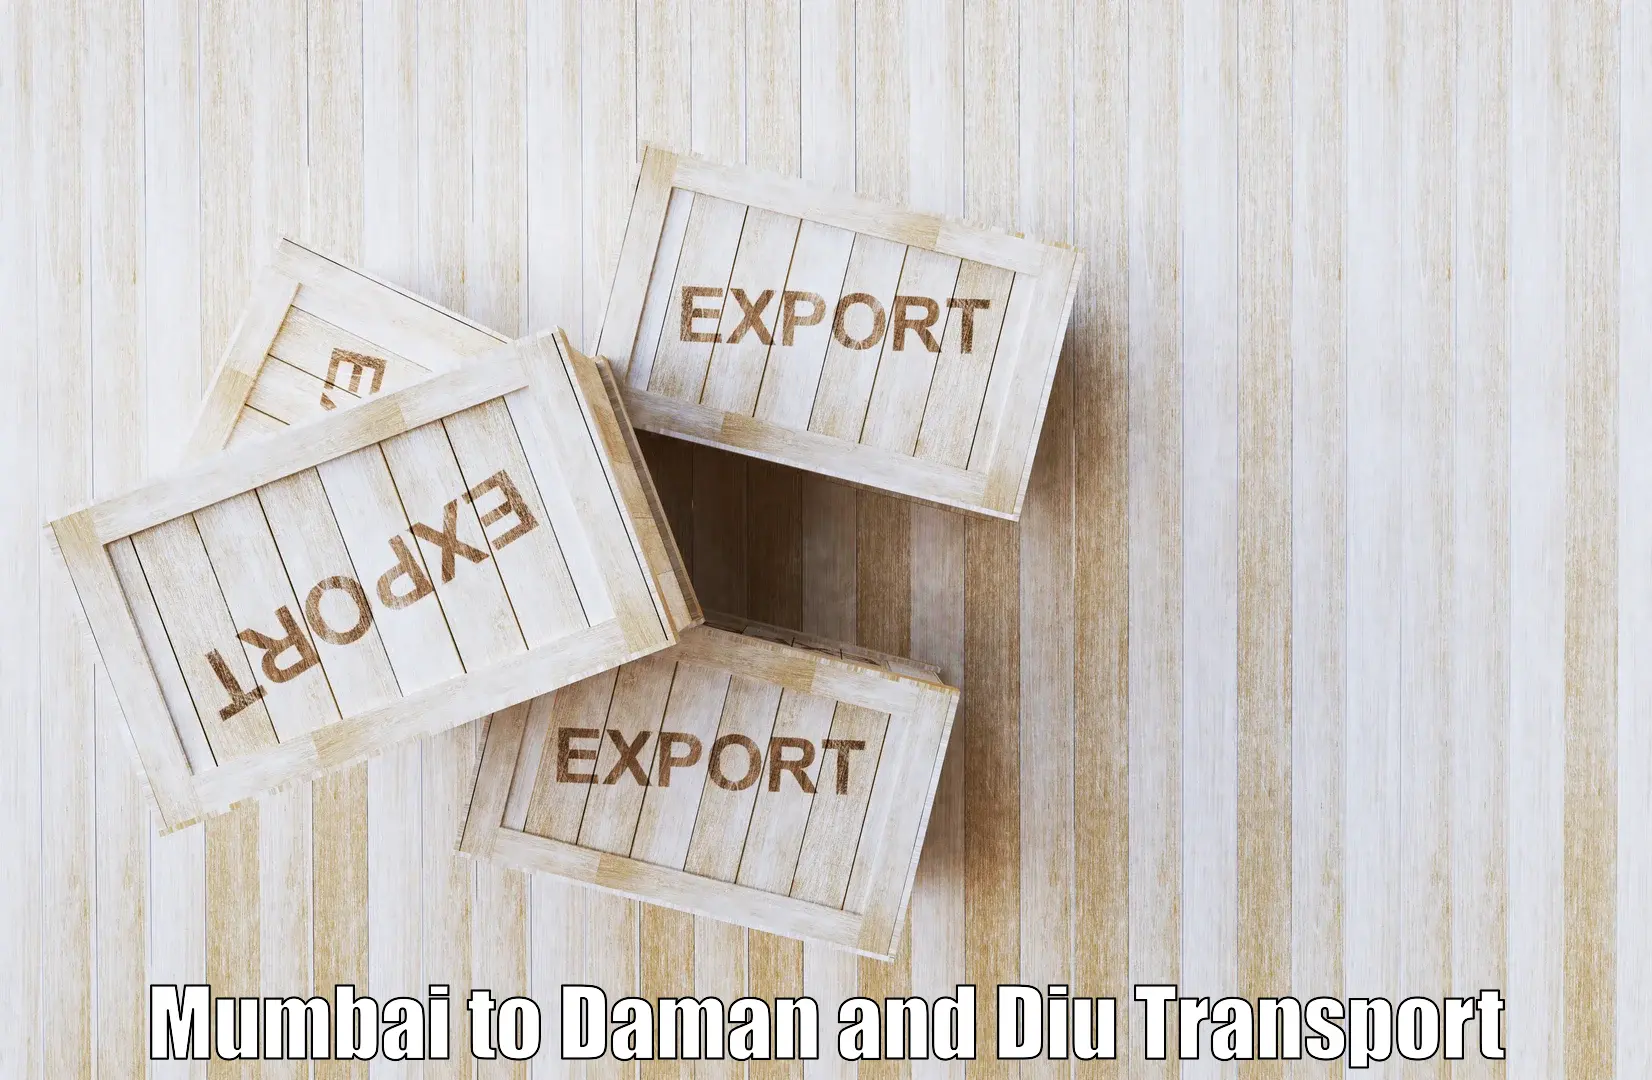 Land transport services Mumbai to Diu